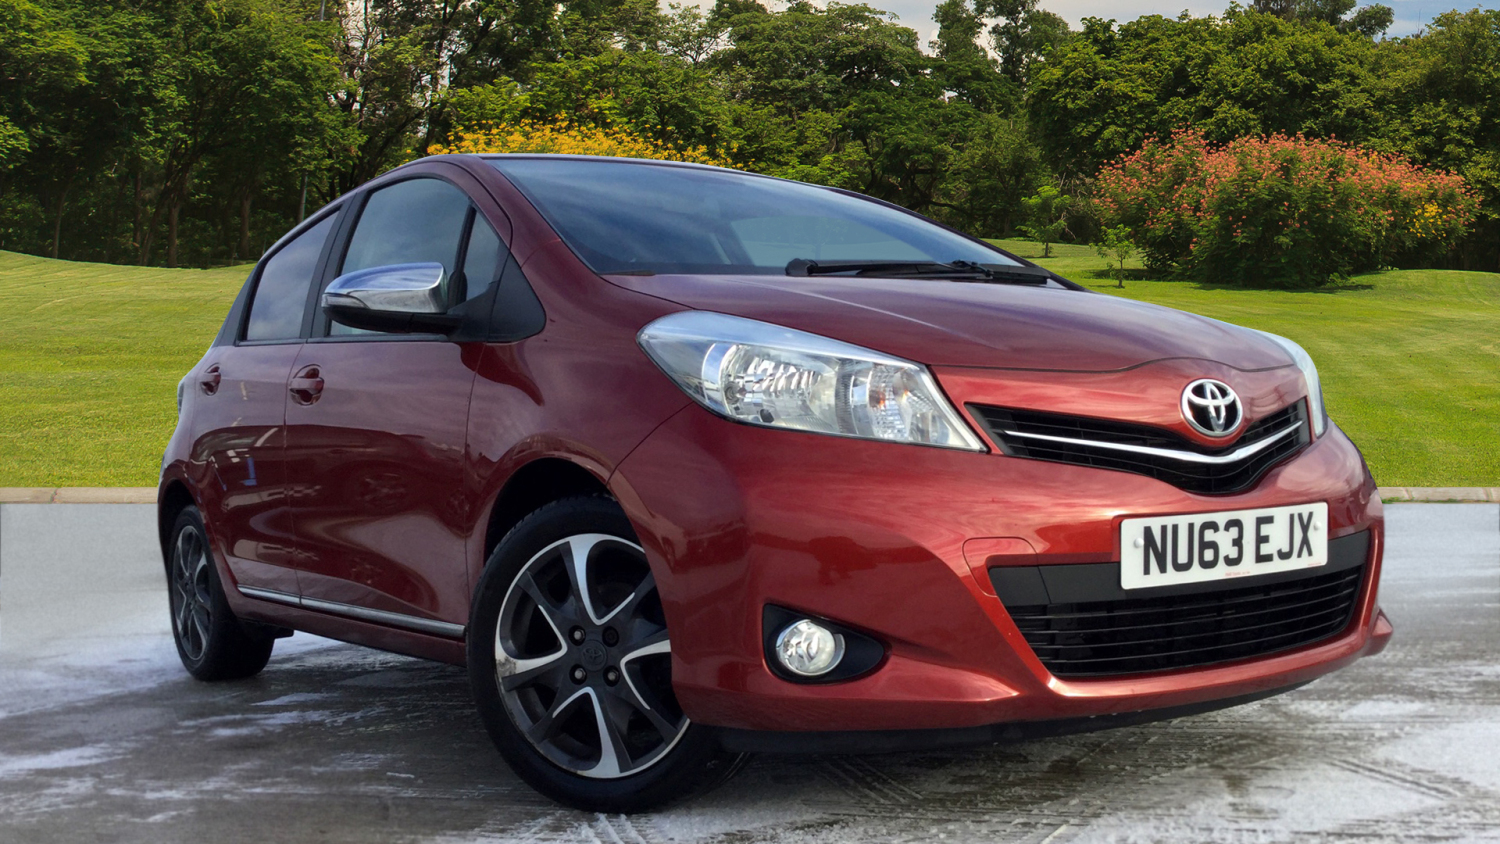 Buy Online Toyota Yaris 133 Vvt I Trend 5dr Petrol Hatchback For Sale